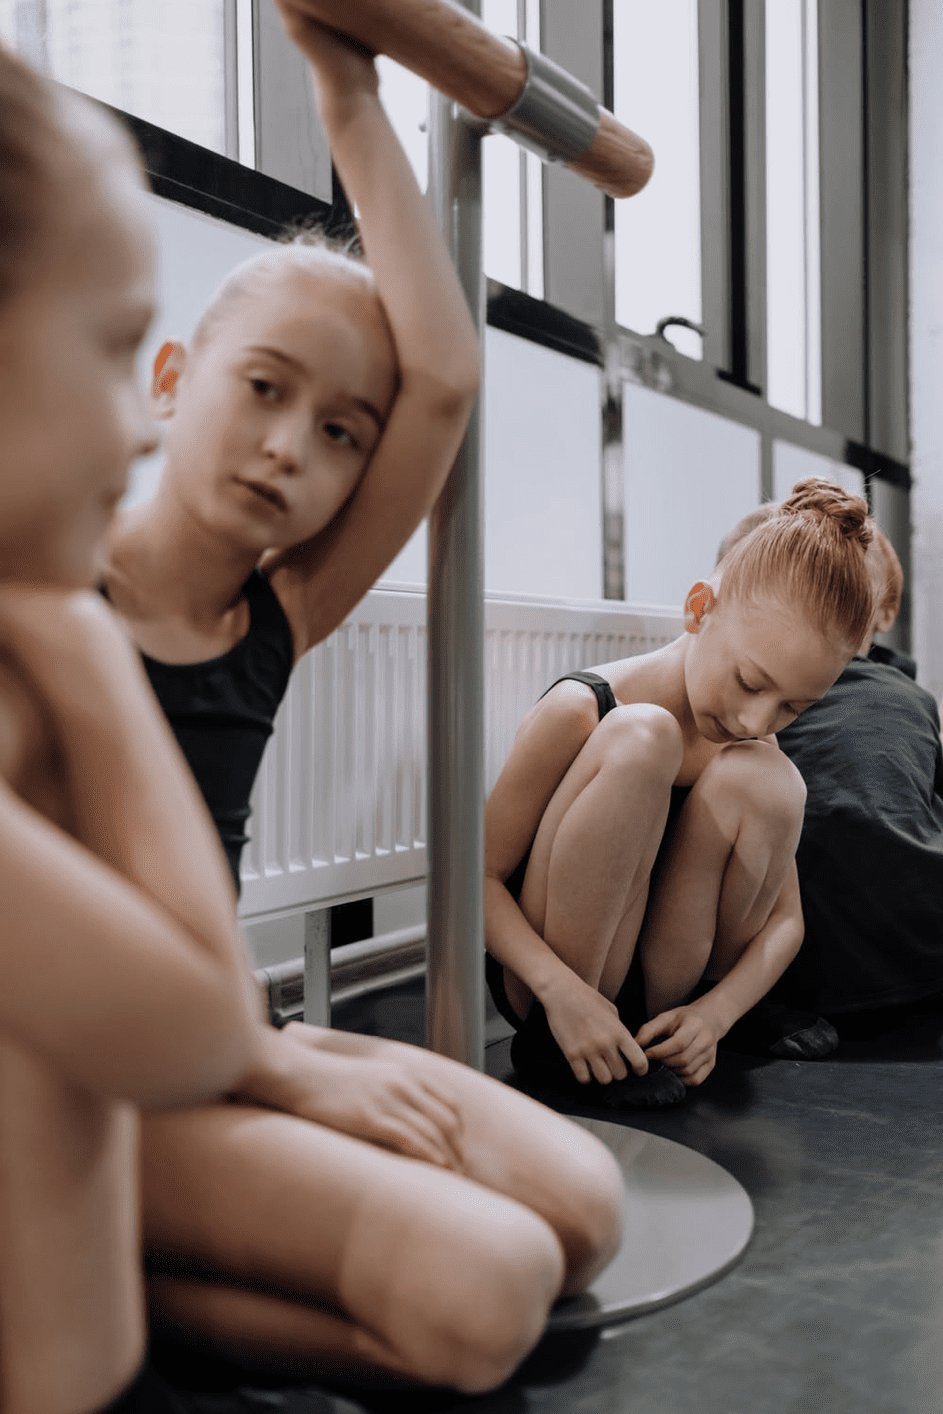 Jessica entdeckte, dass Julia sich nach dem Ballet in ein verlassenes Haus stahl. | Quelle: Pexels